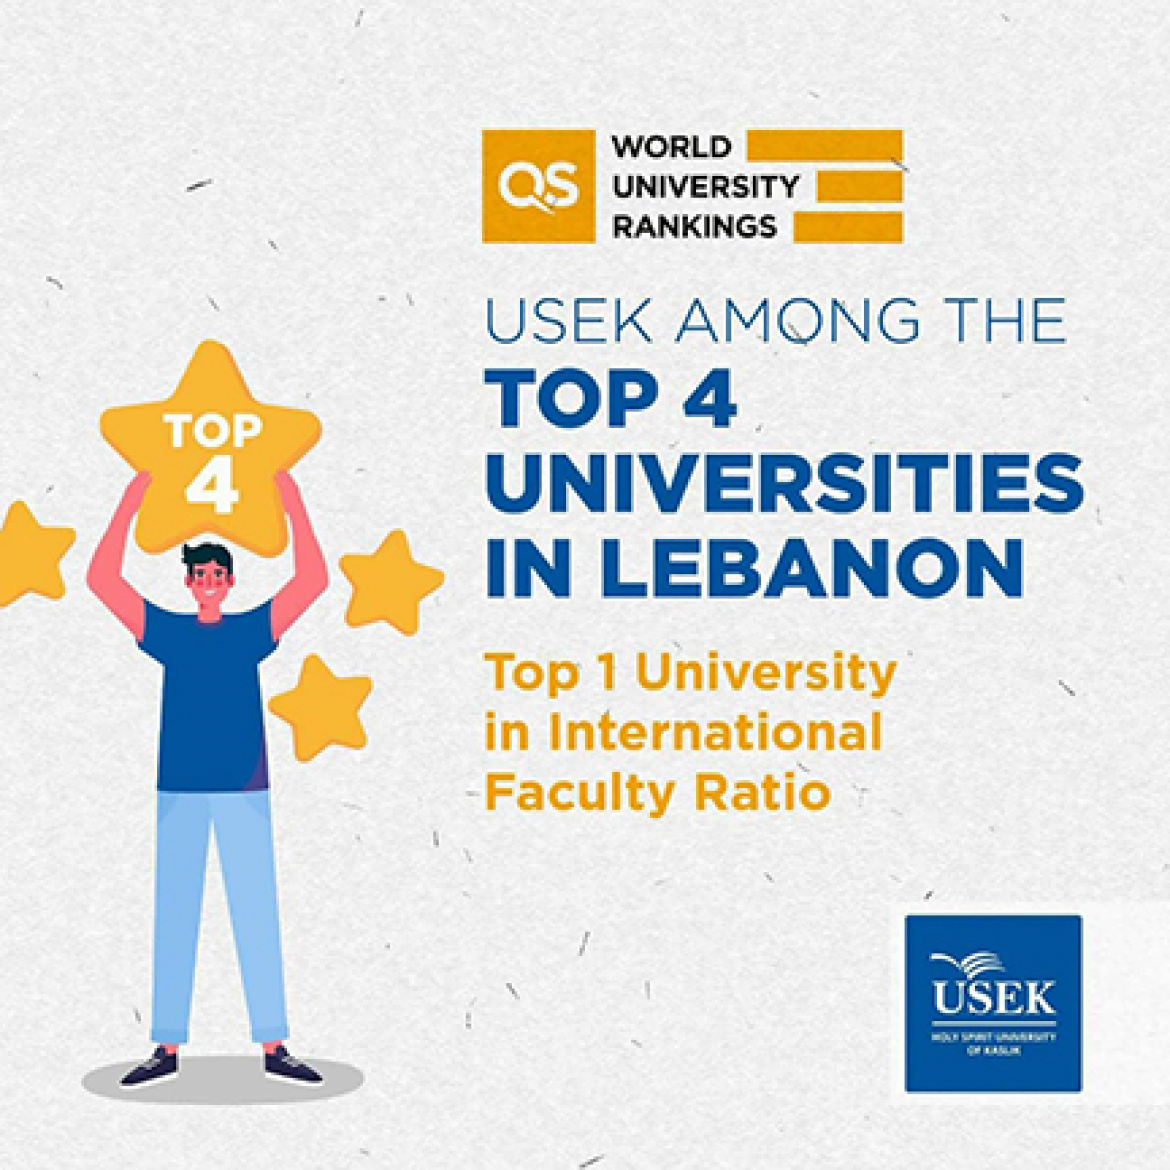 USEK ranked among the Top 4 universities in Lebanon